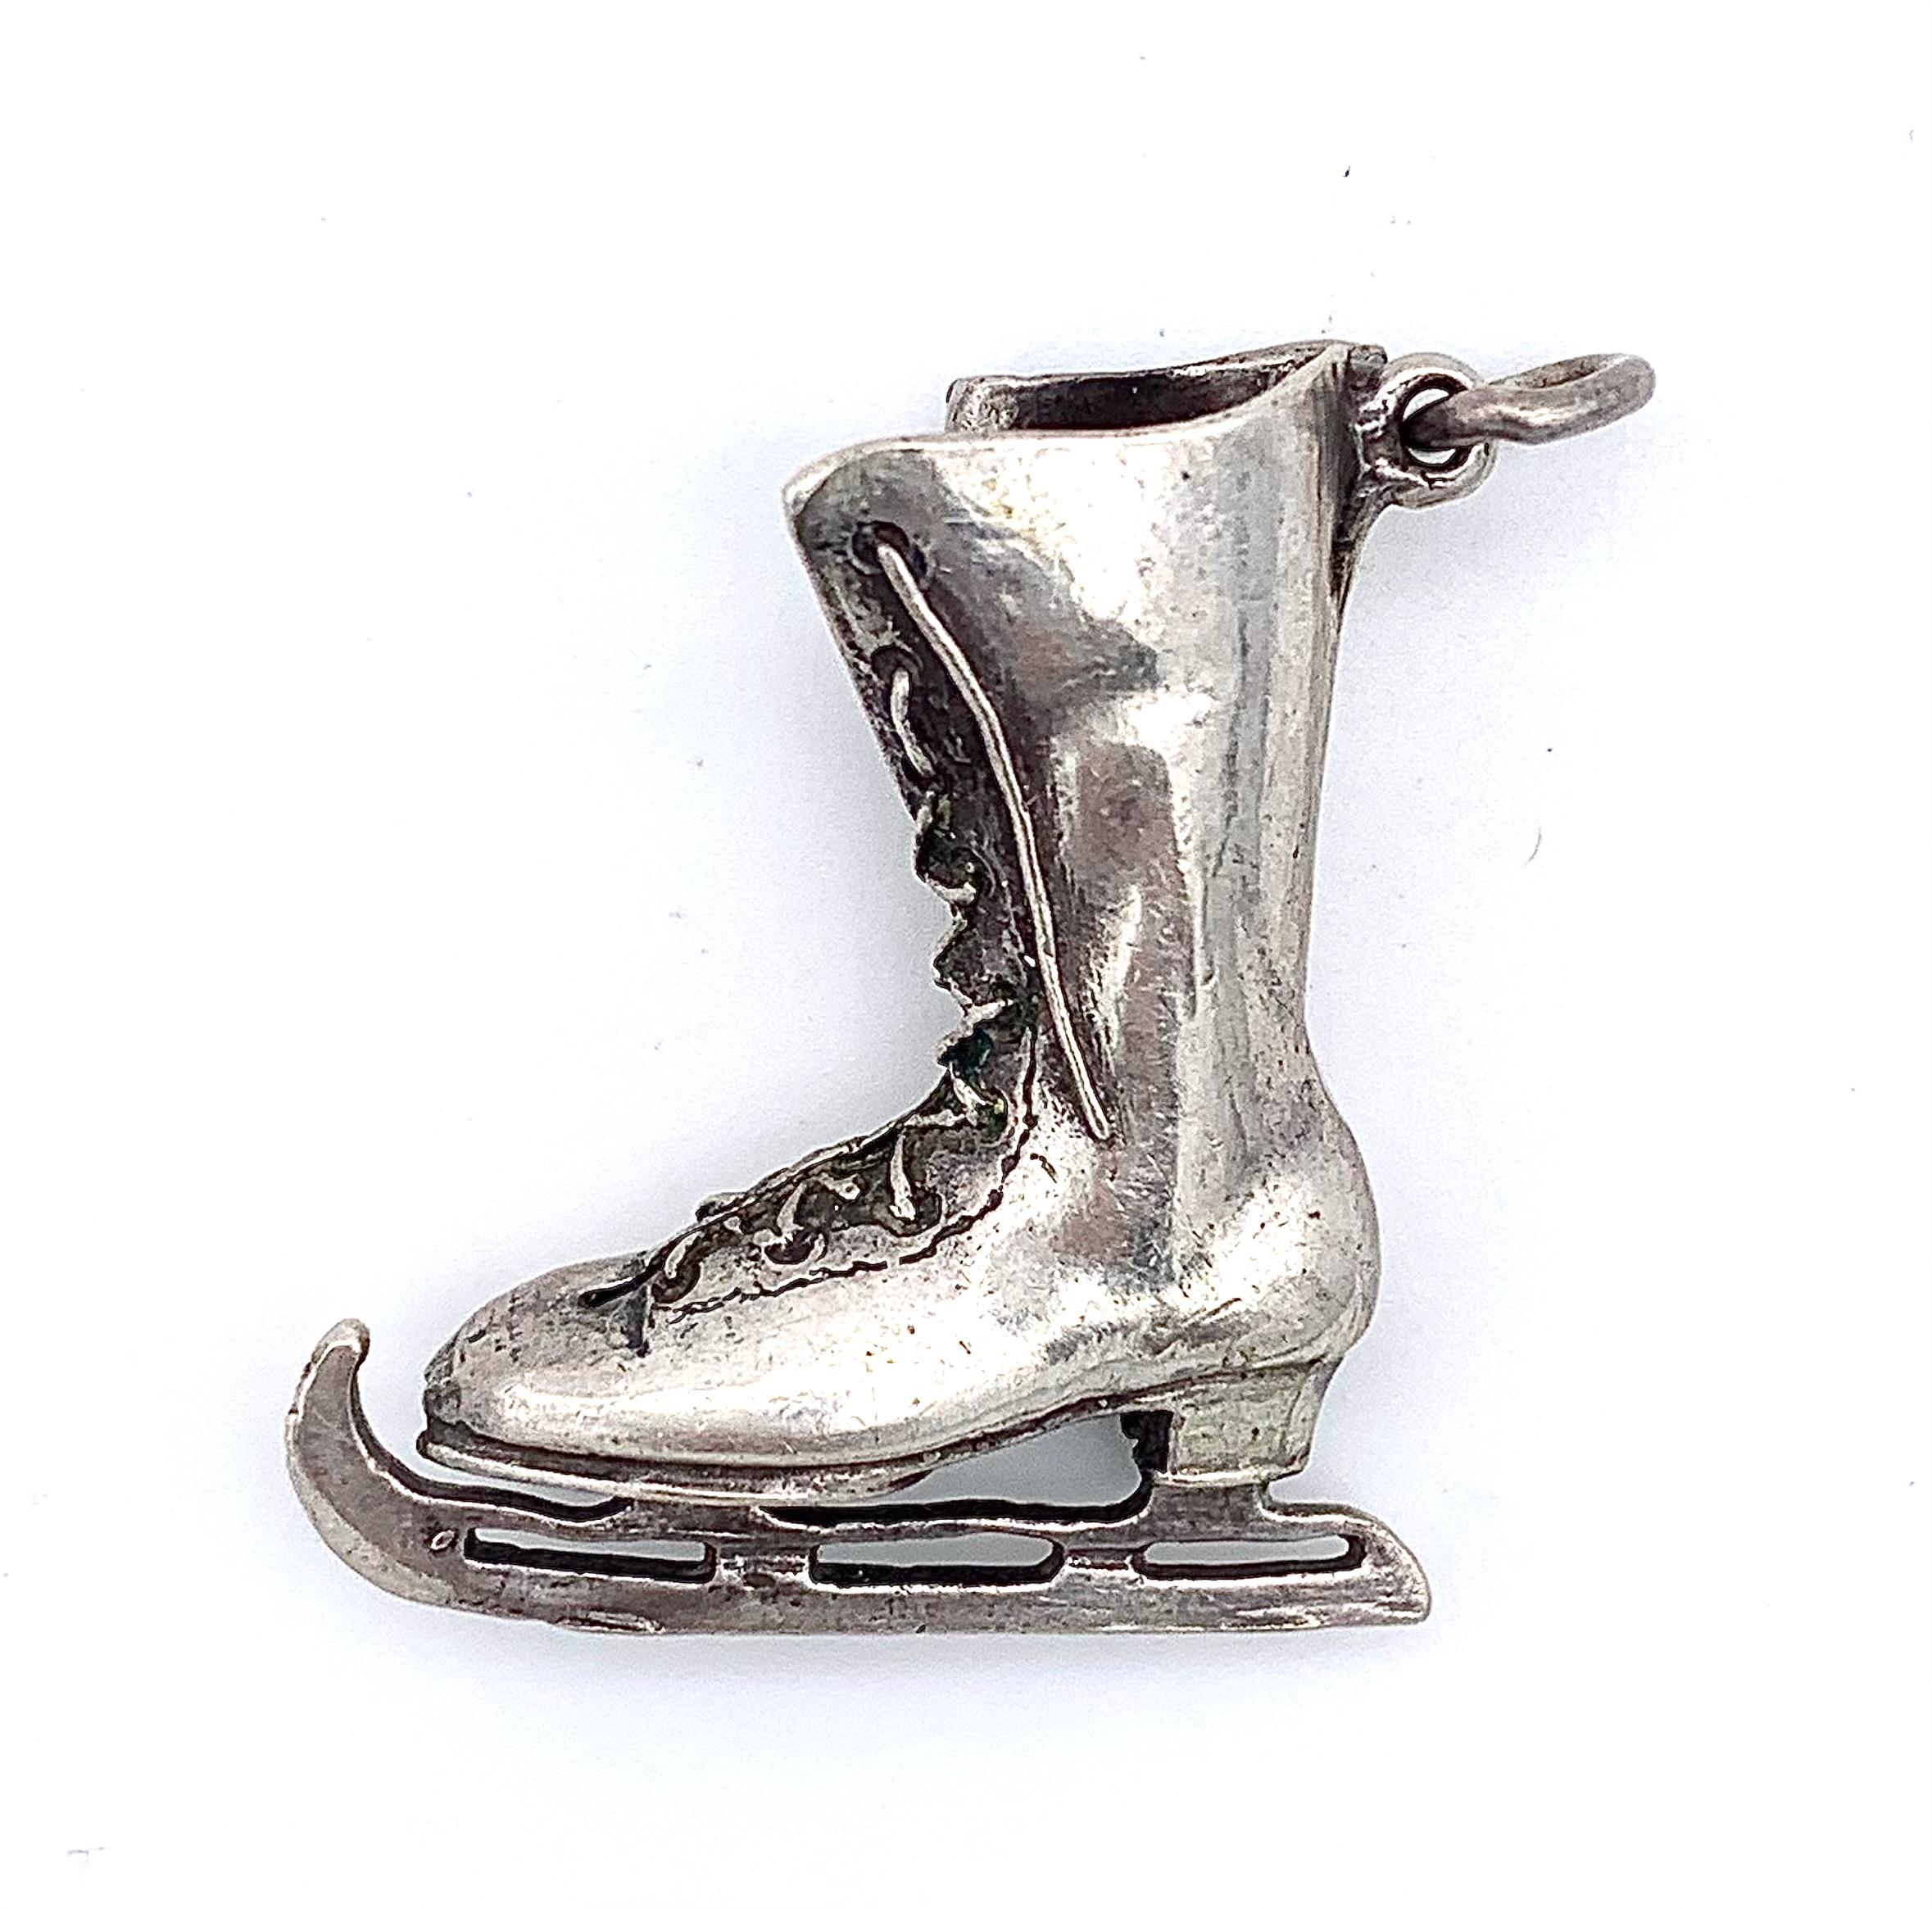 Ce joli pendentif d'une botte à lacets de patinage sur glace a été réalisé
vers la fin du dix-neuvième siècle, époque à laquelle le patinage sur glace était un loisir à la mode. La botte joliment modelée a été coulée en argent et finie à la main.